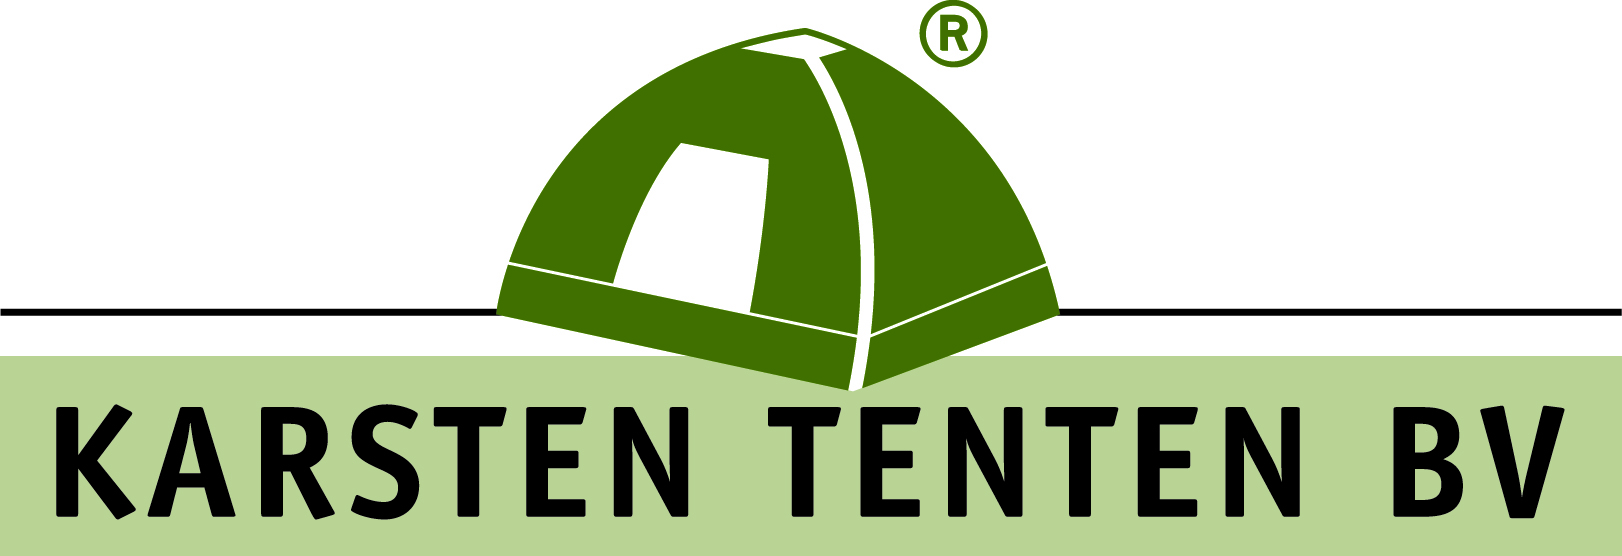 Karsten Tent logo